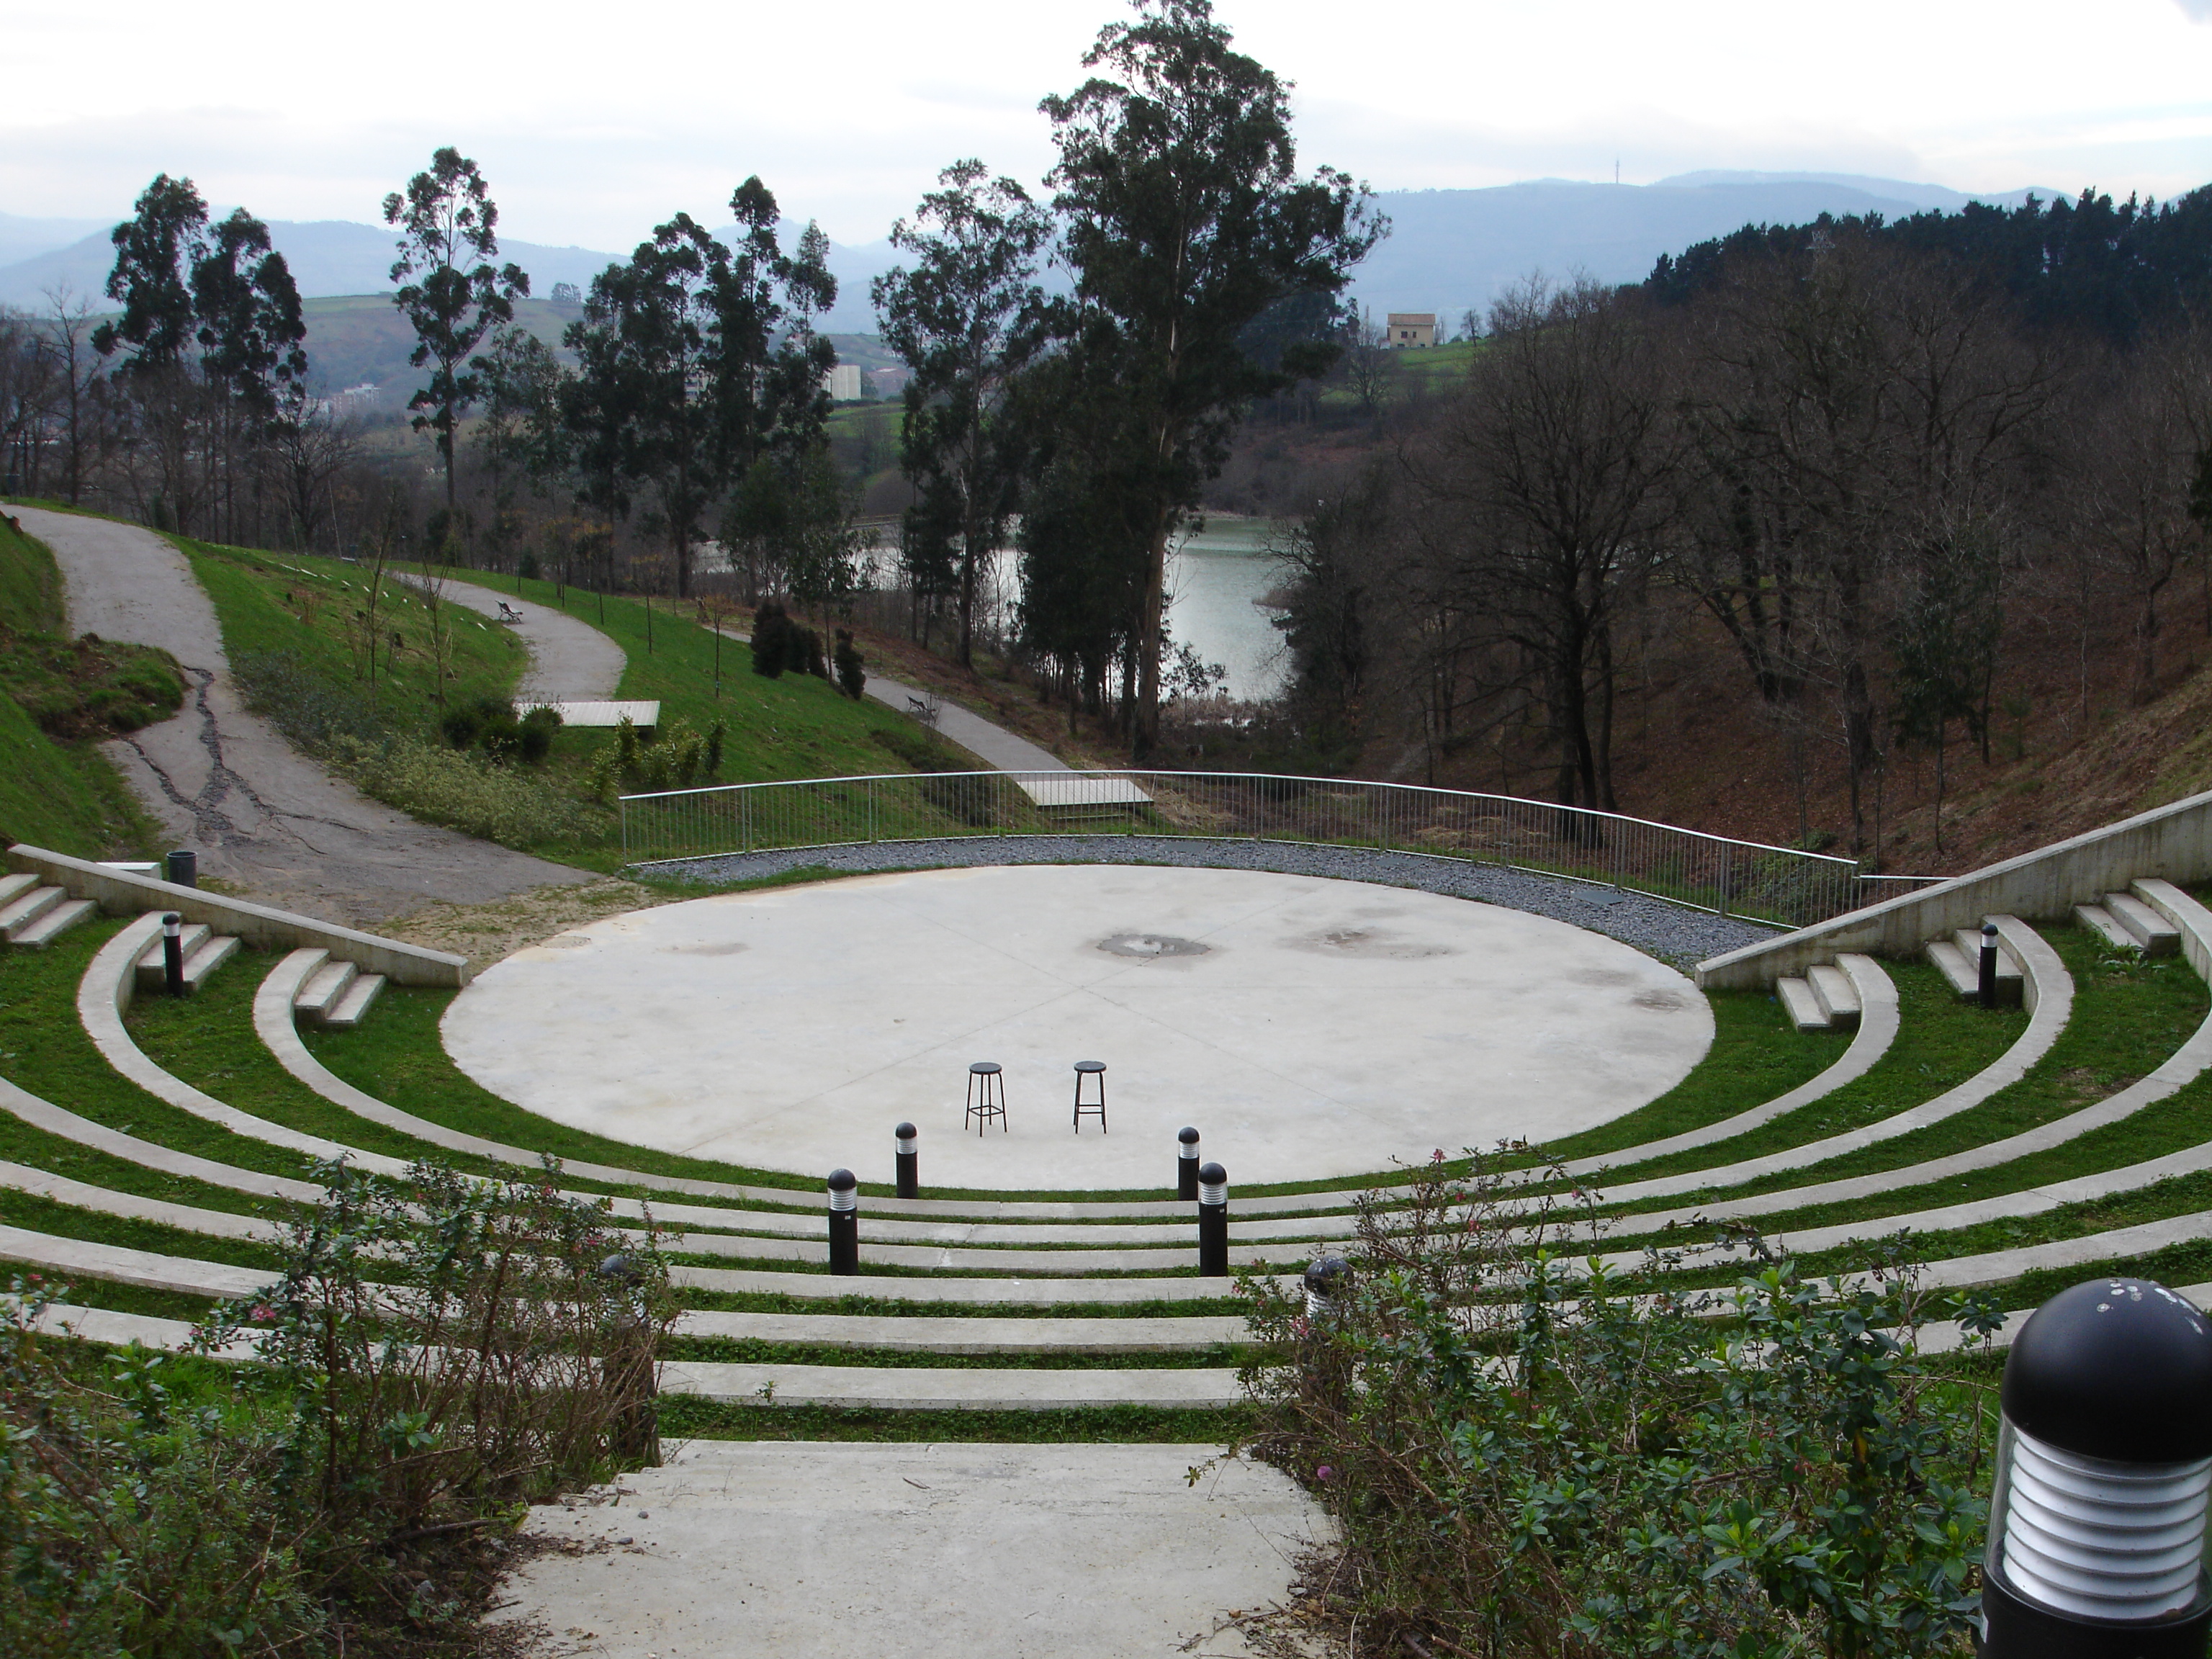 Arboretum amphitheater